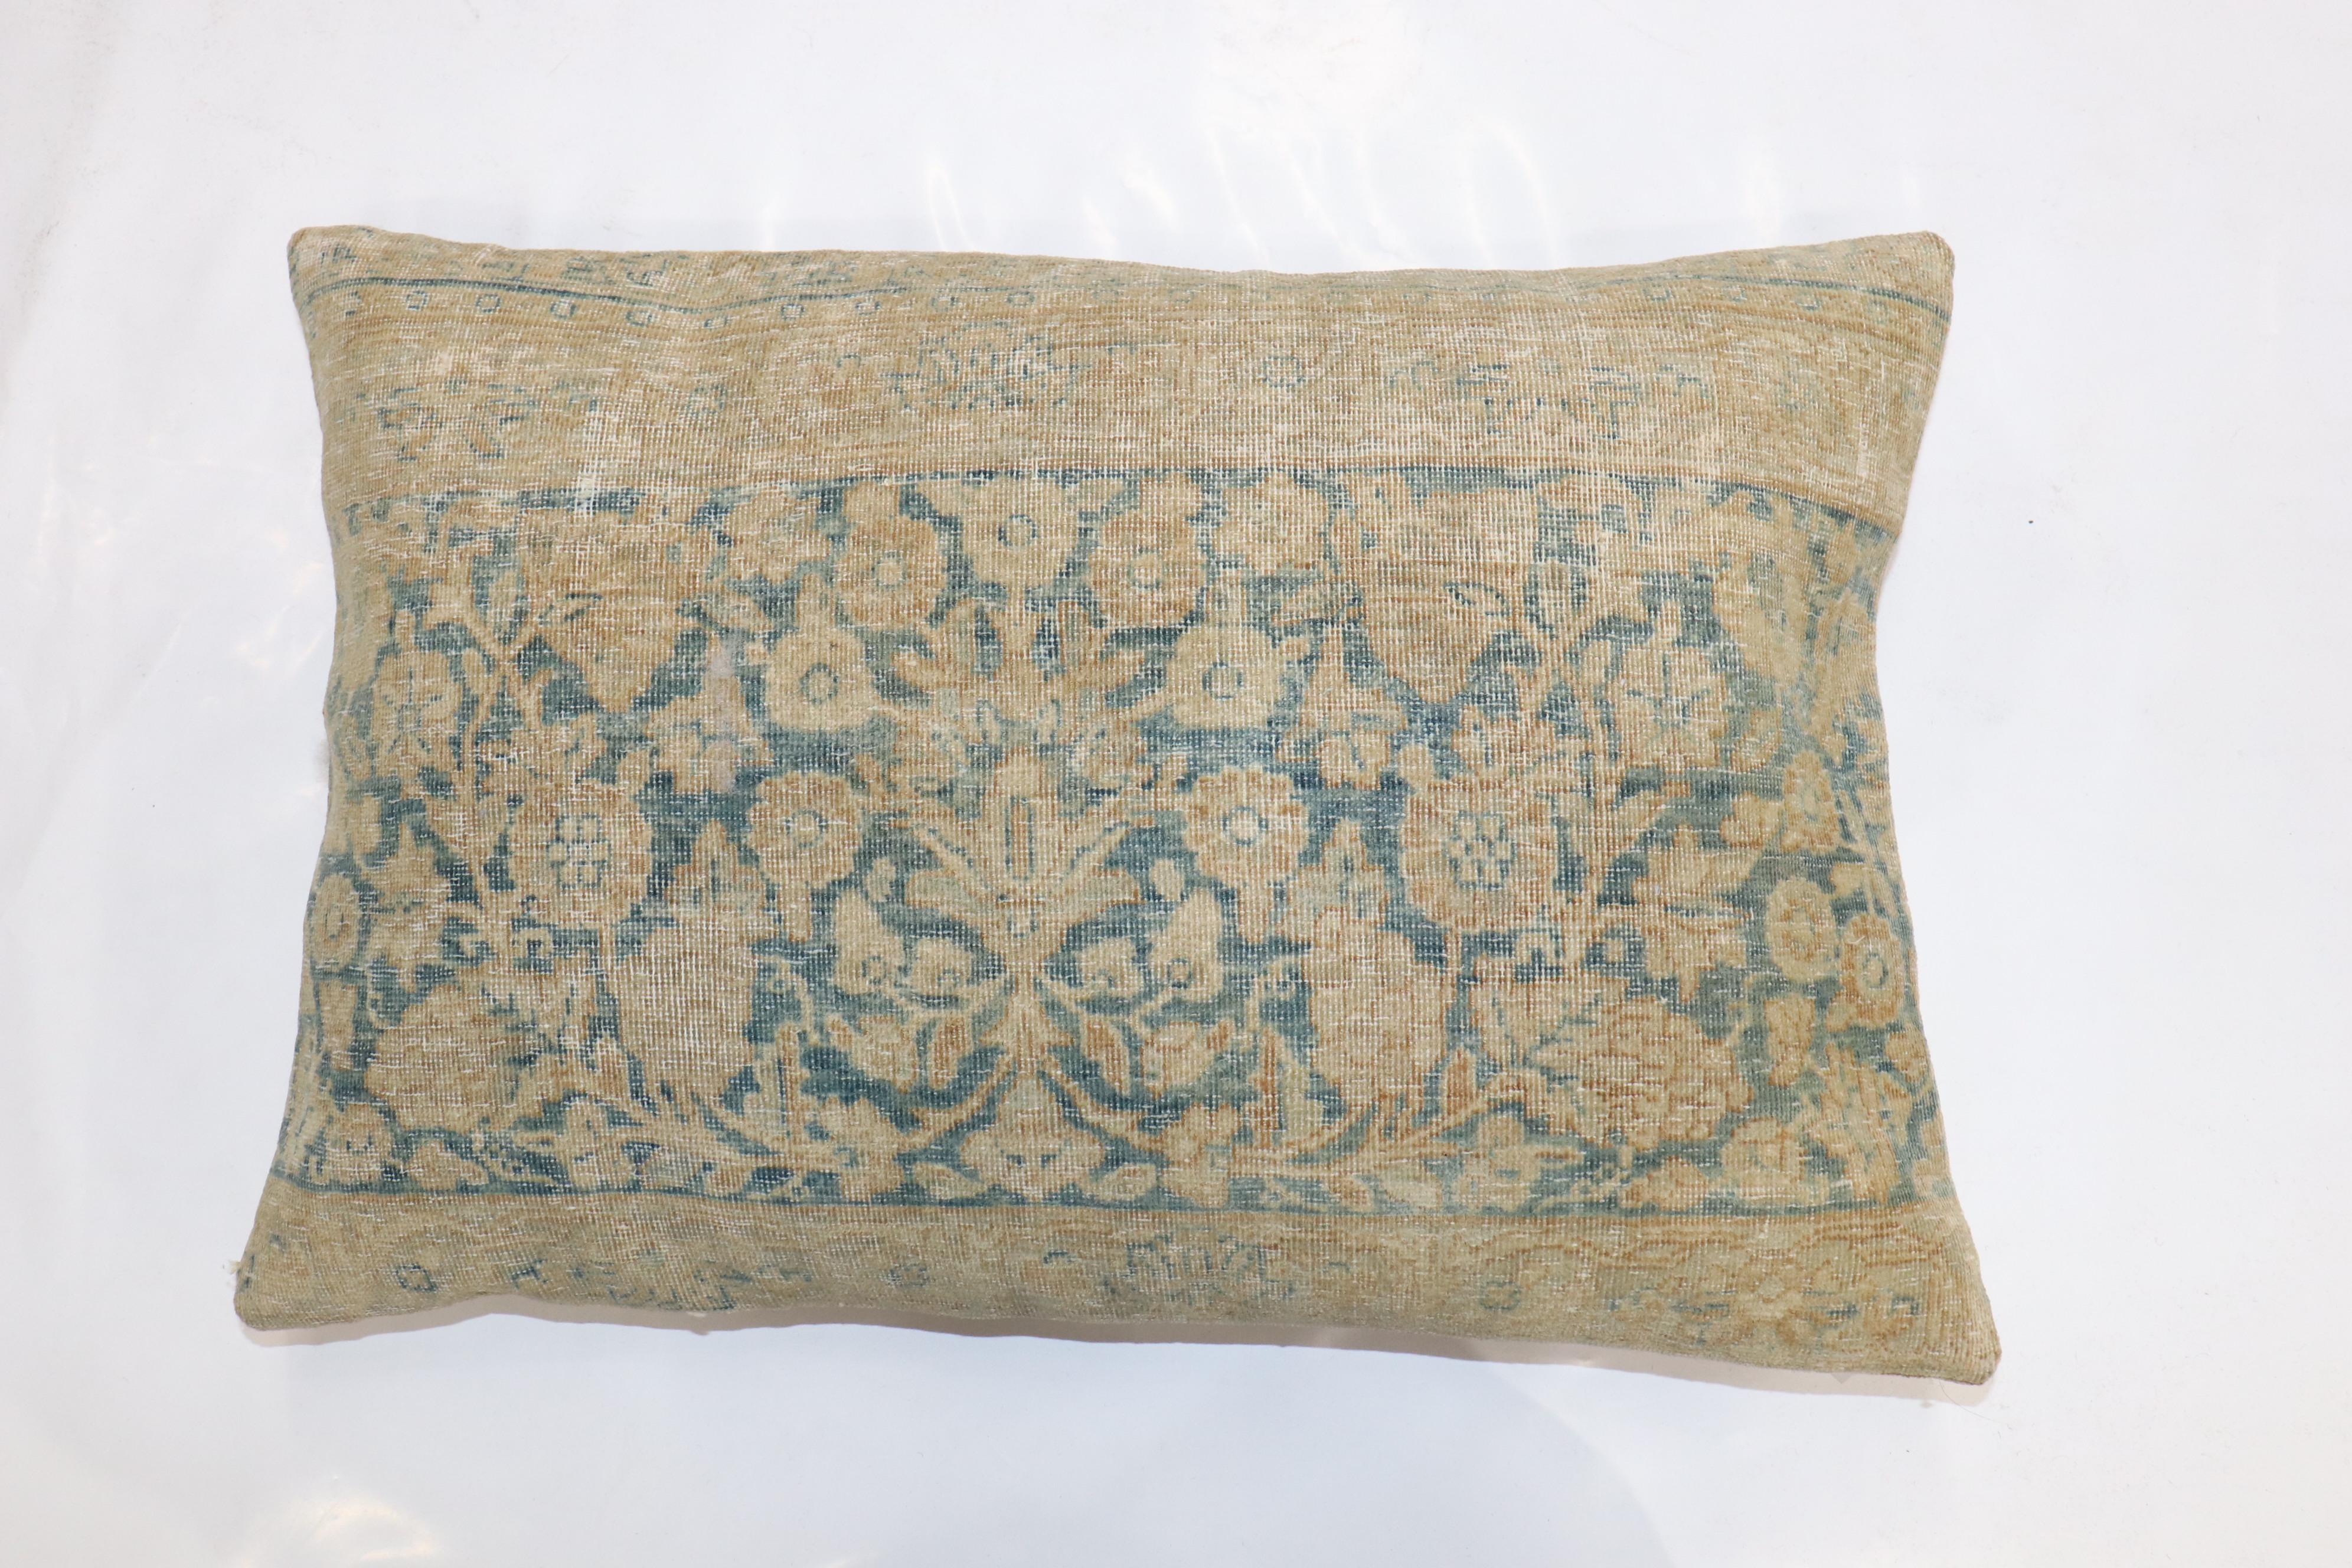 Kissen aus einem persischen Kerman-Teppich aus dem 19. Jahrhundert. Füllungseinsatz und Reißverschluss vorhanden

Maße: 16